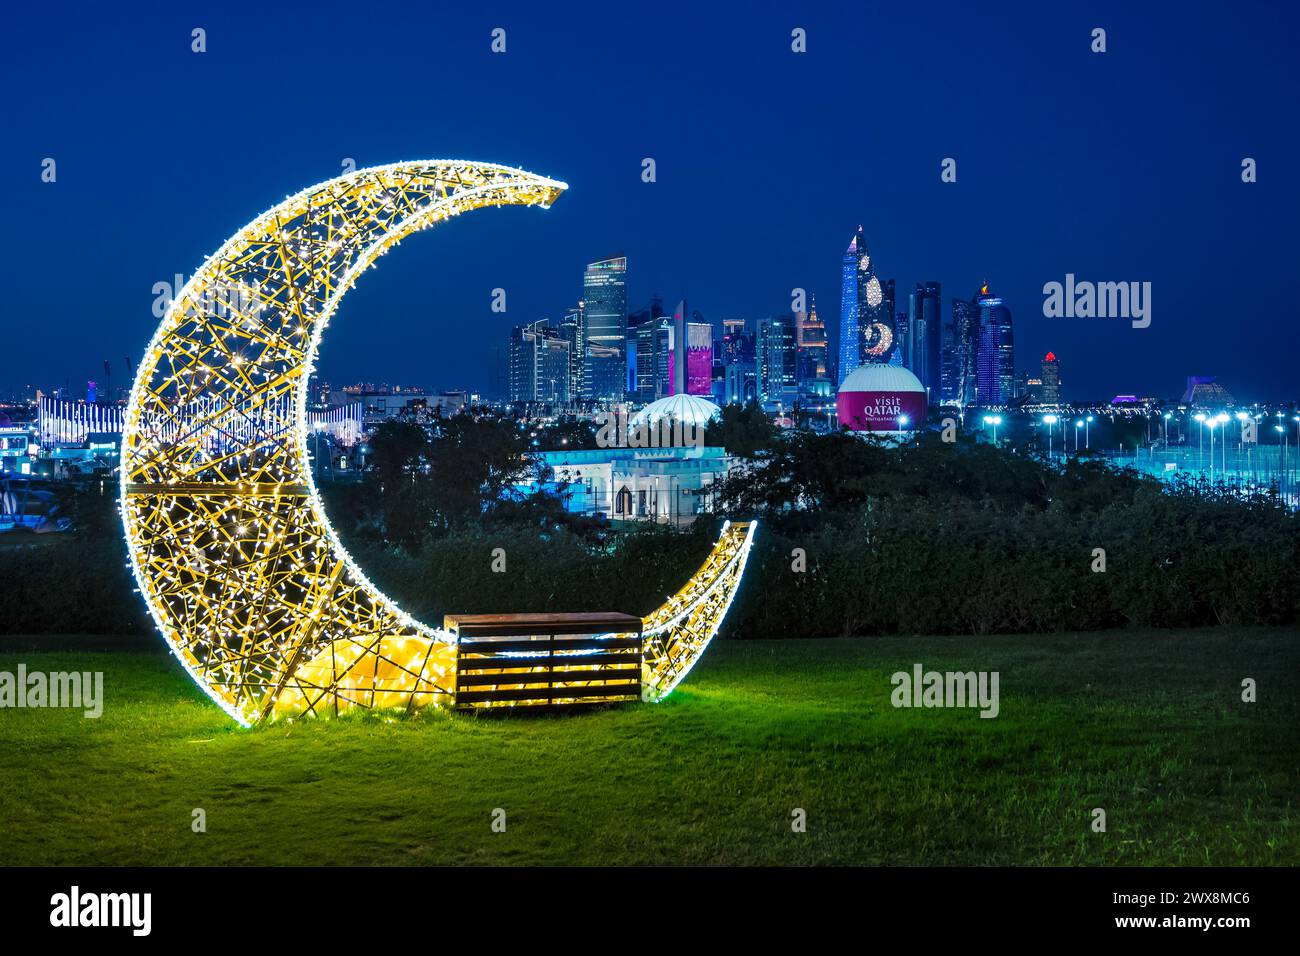 Mondsichel mit Lichtern während des Ramadan auf der Doha Expo 2023 Bidda Park Doha, Katar. Stockfoto